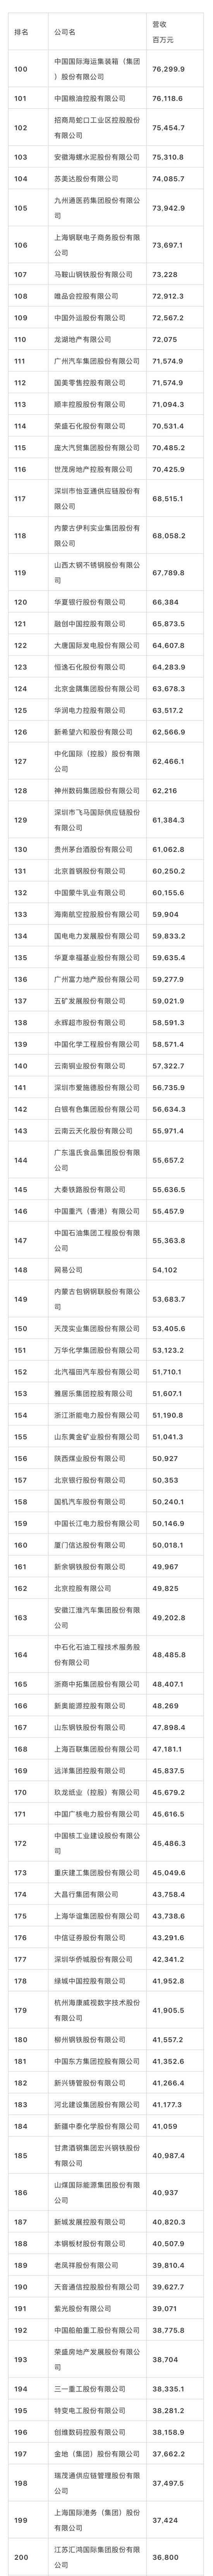 2018年《财富》中国500强排行榜揭晓(附完整榜单)